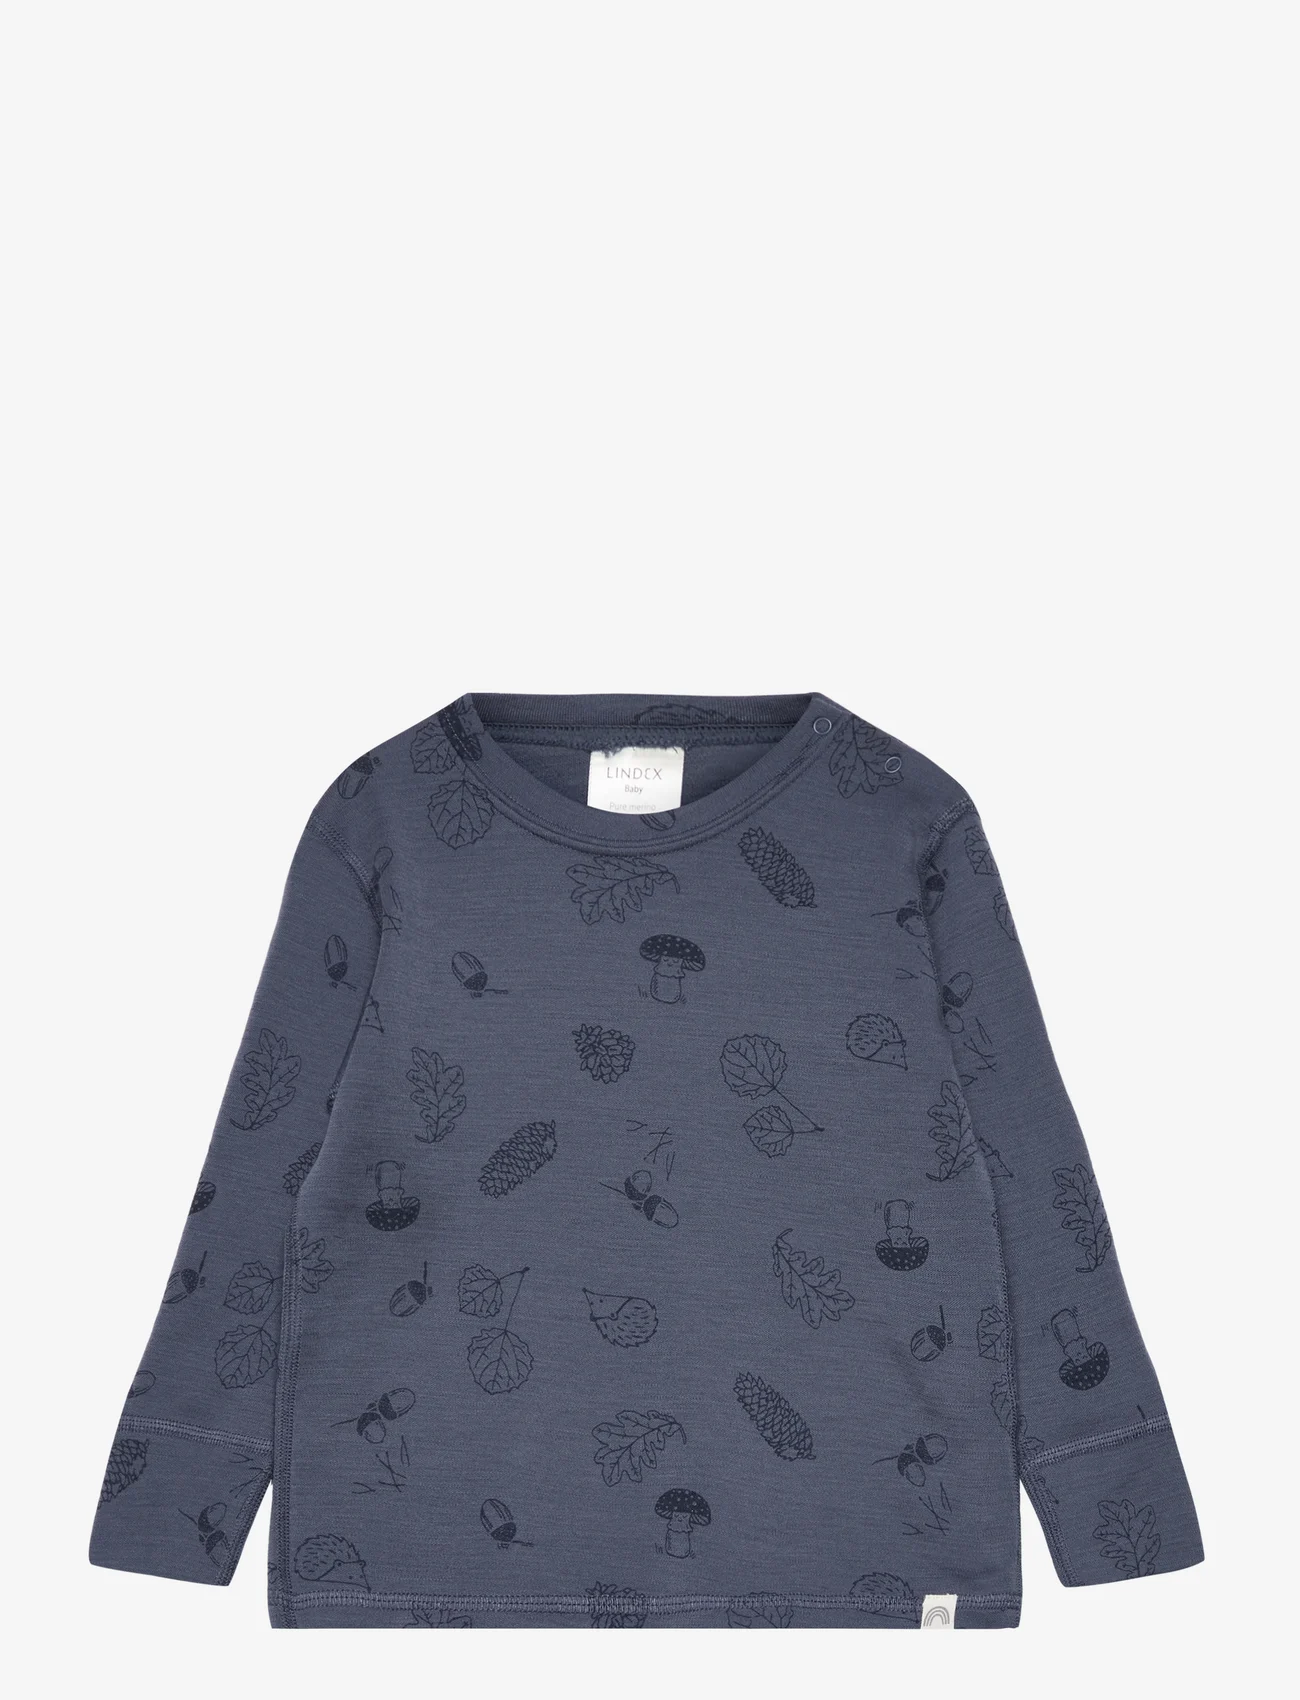 Lindex - Top baby merino wool - langærmede t-shirts - dark dusty blue - 0